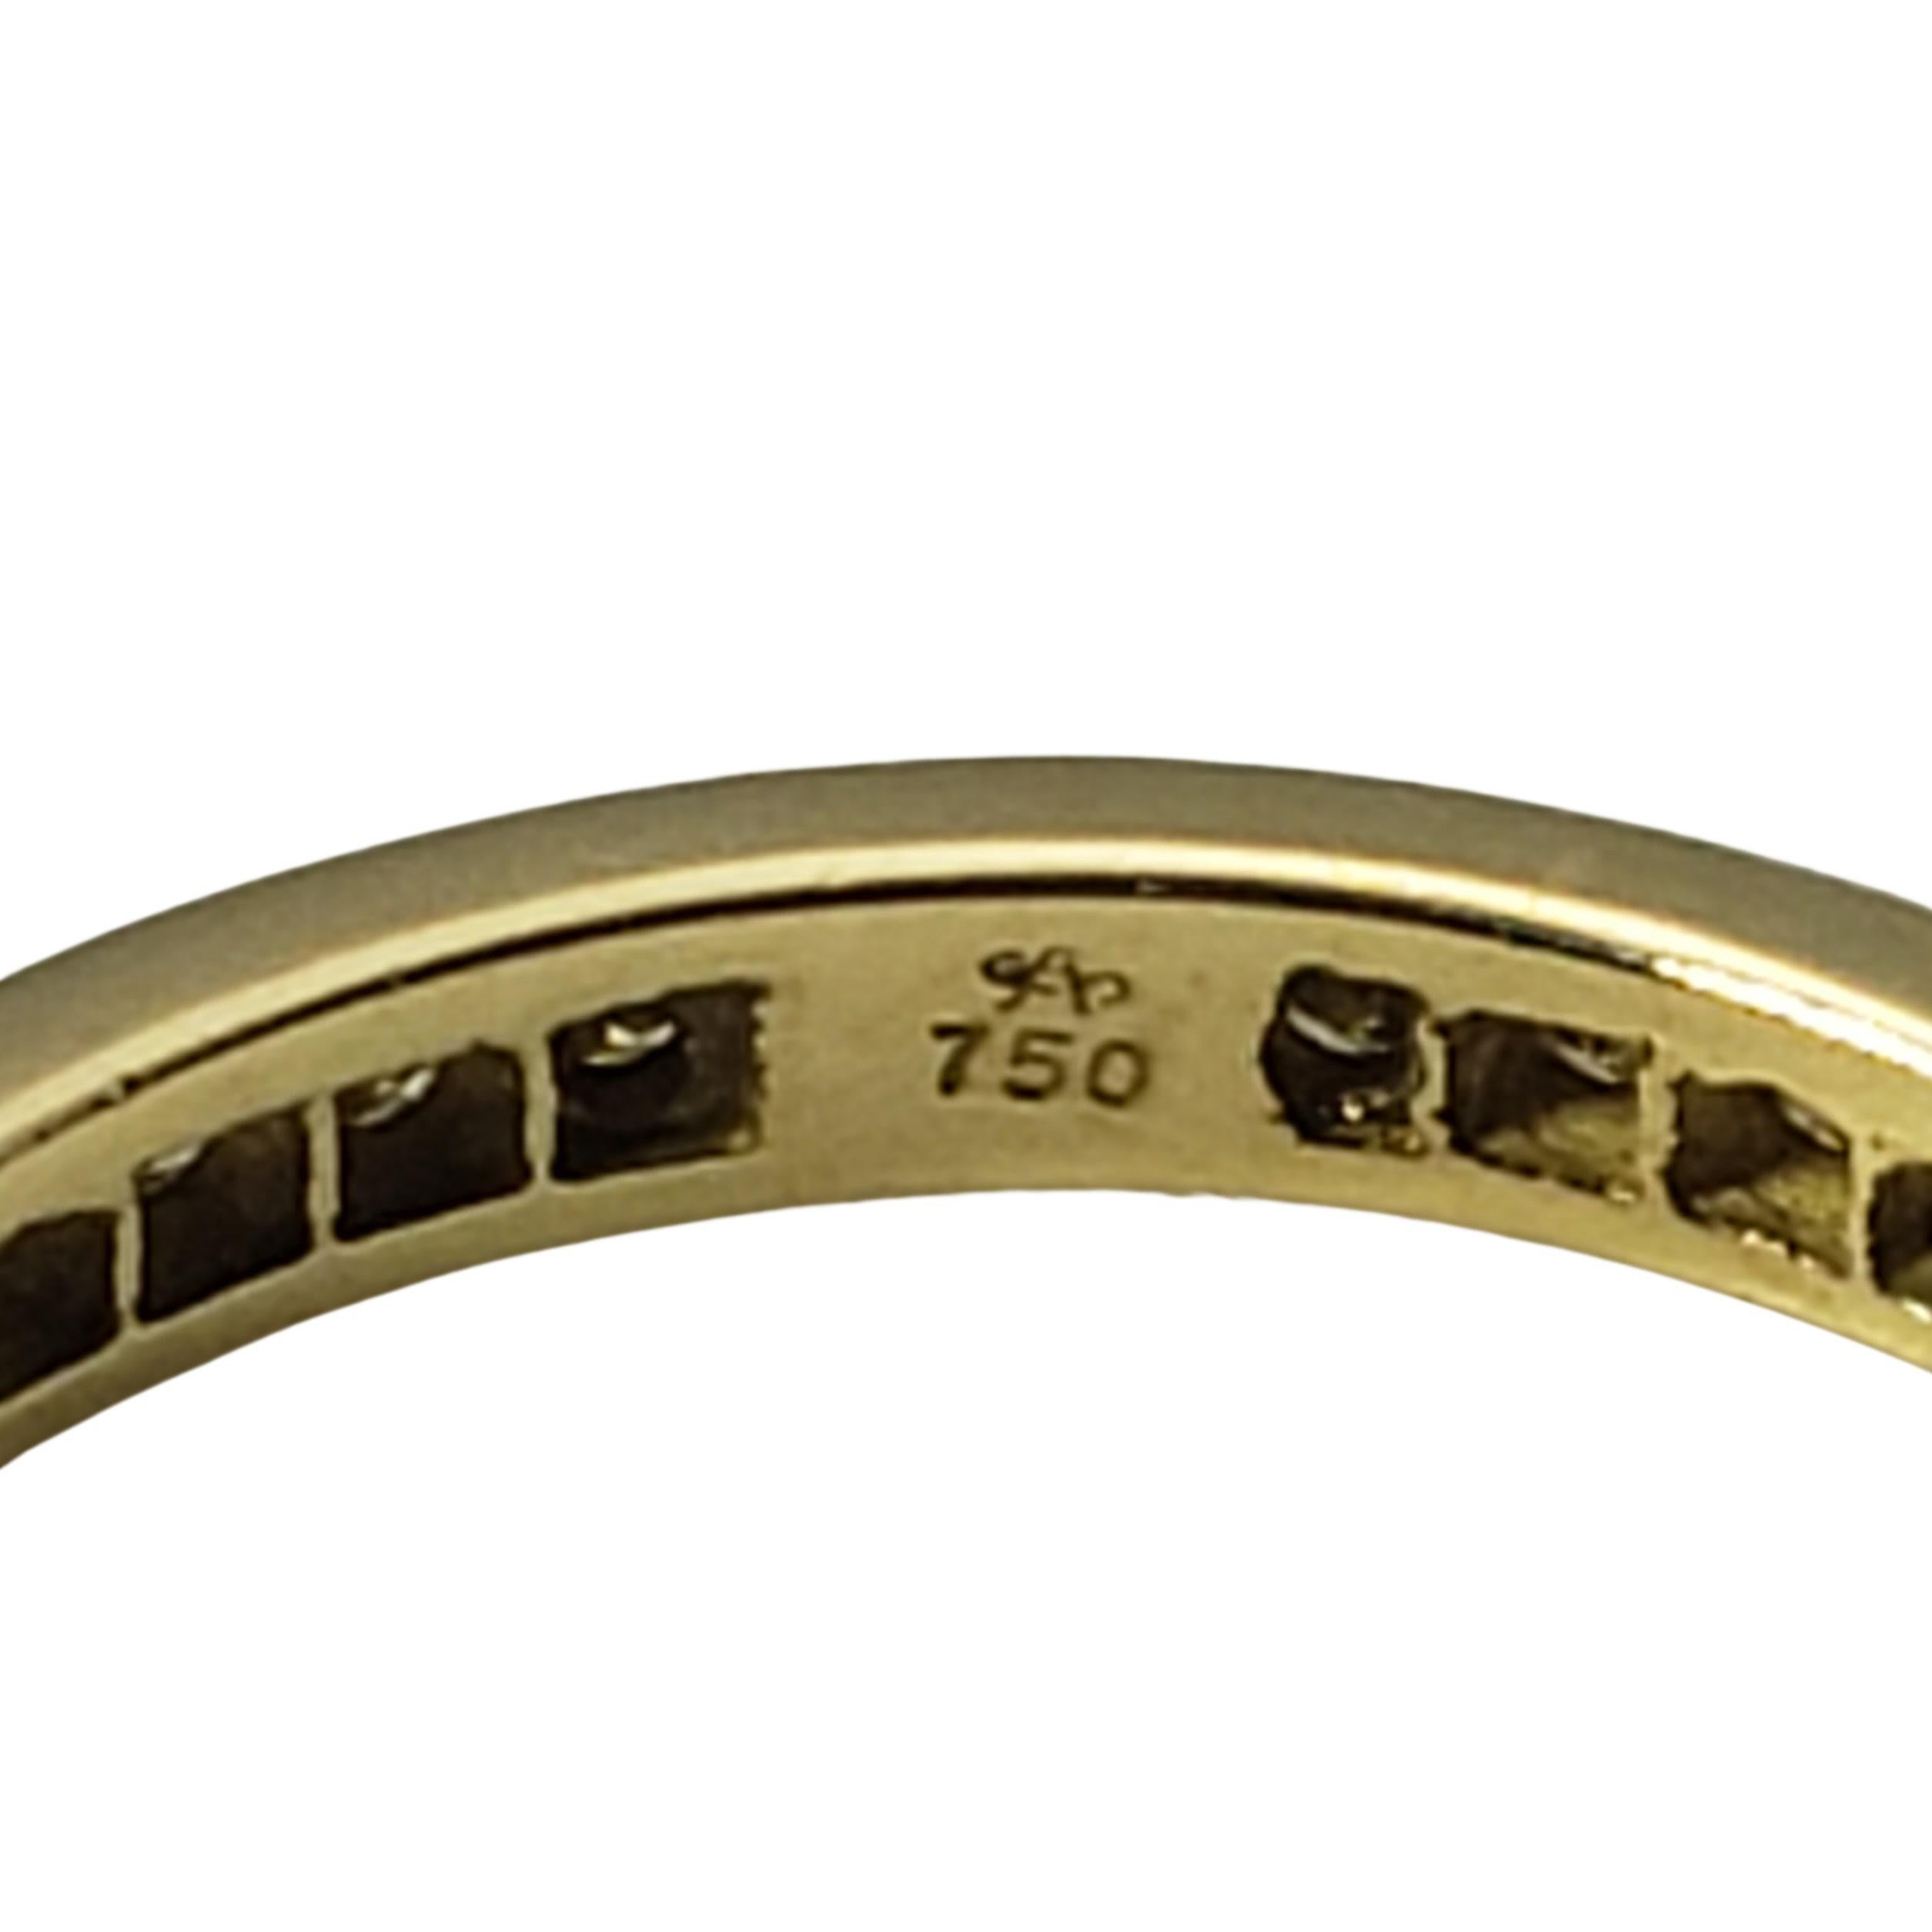 18 Karat Yellow Gold Yellow Diamond Eternity Band Ring Size 6.75 2